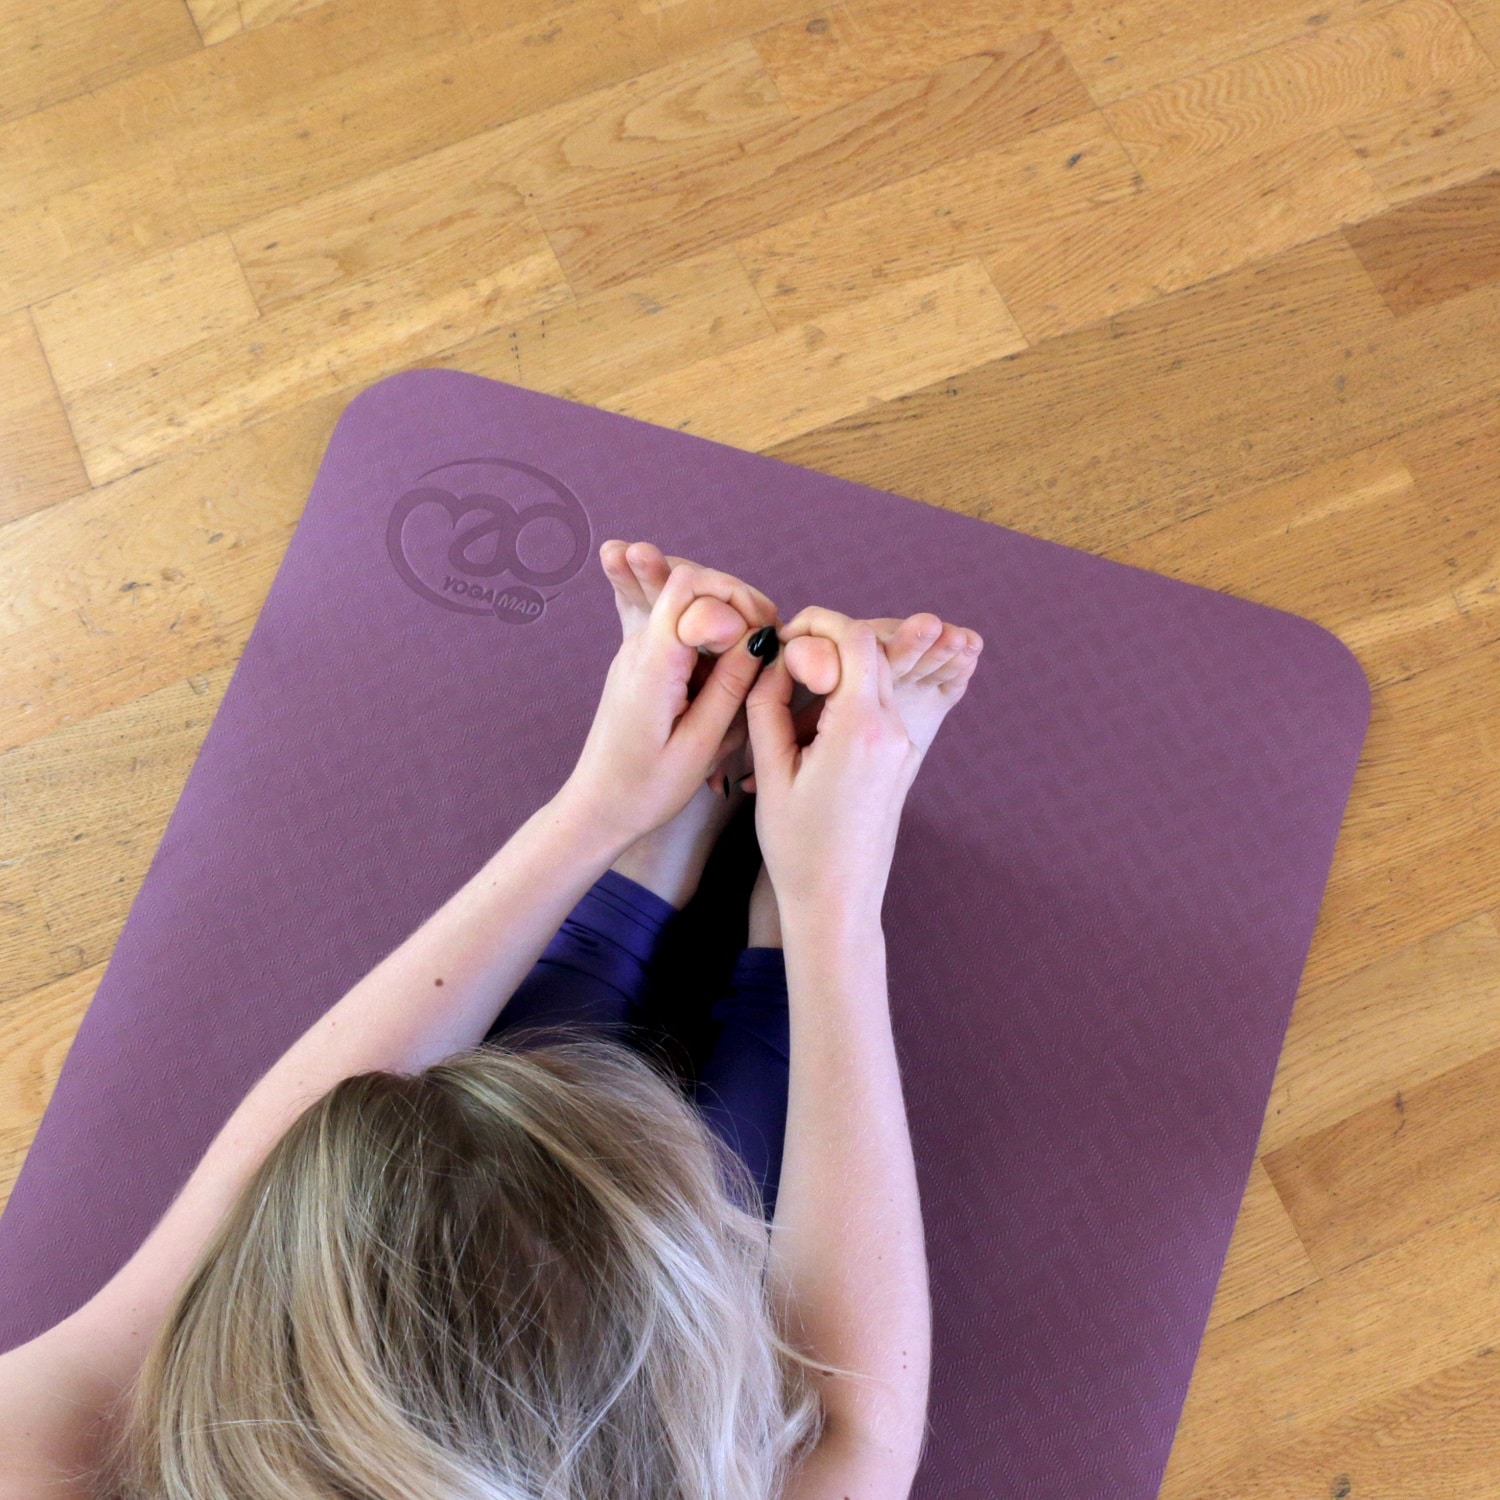 Quels sont les meilleurs tapis de Yoga? - Stelvoren